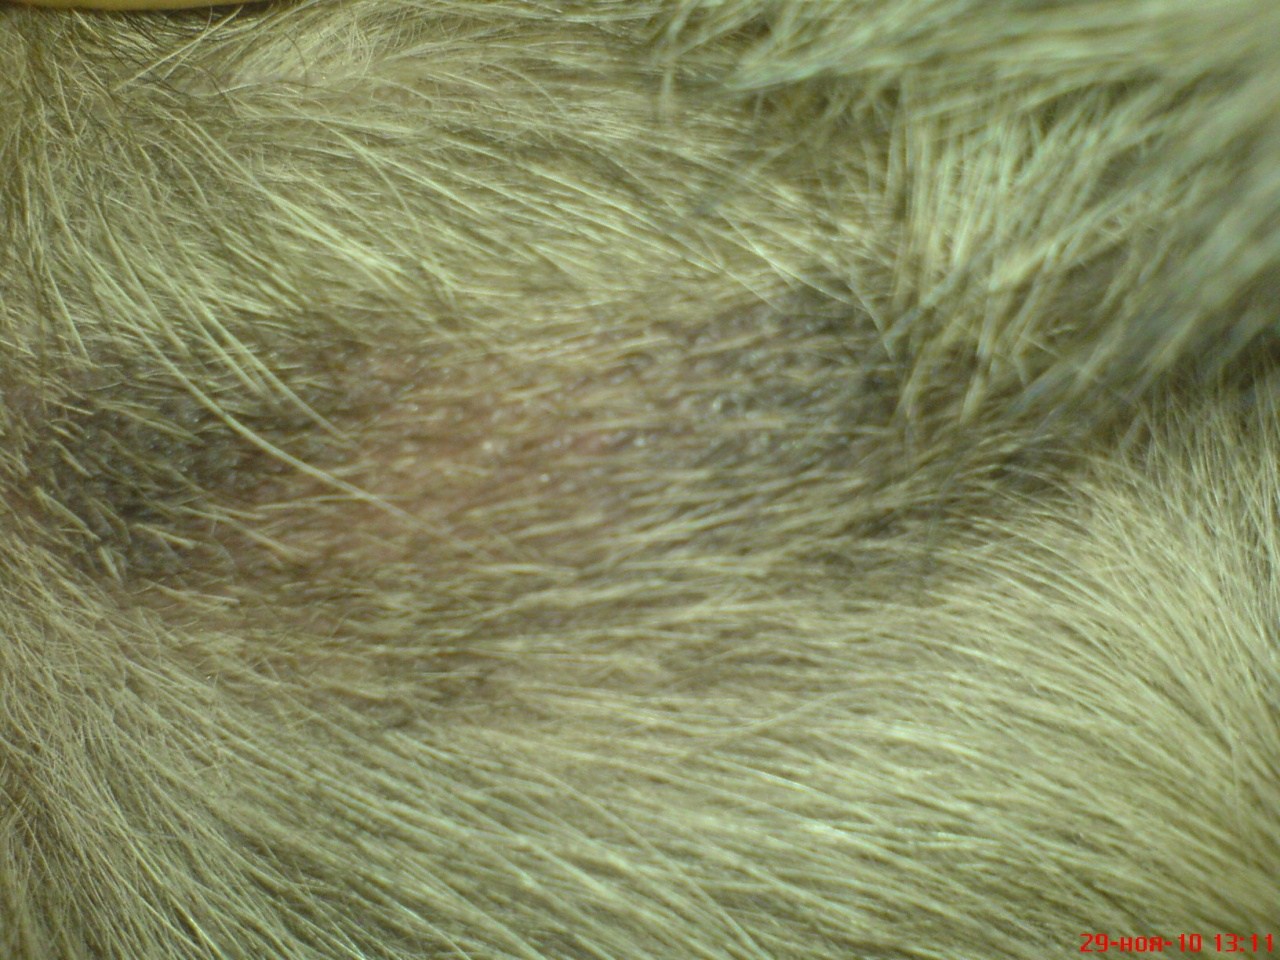 У собаки выпадают волосы. Шерсть собаки. Шерсть выпадает и шелушится у собаки. Заболевания шерсти у собак. Грибковые заболевания кожи у собак.